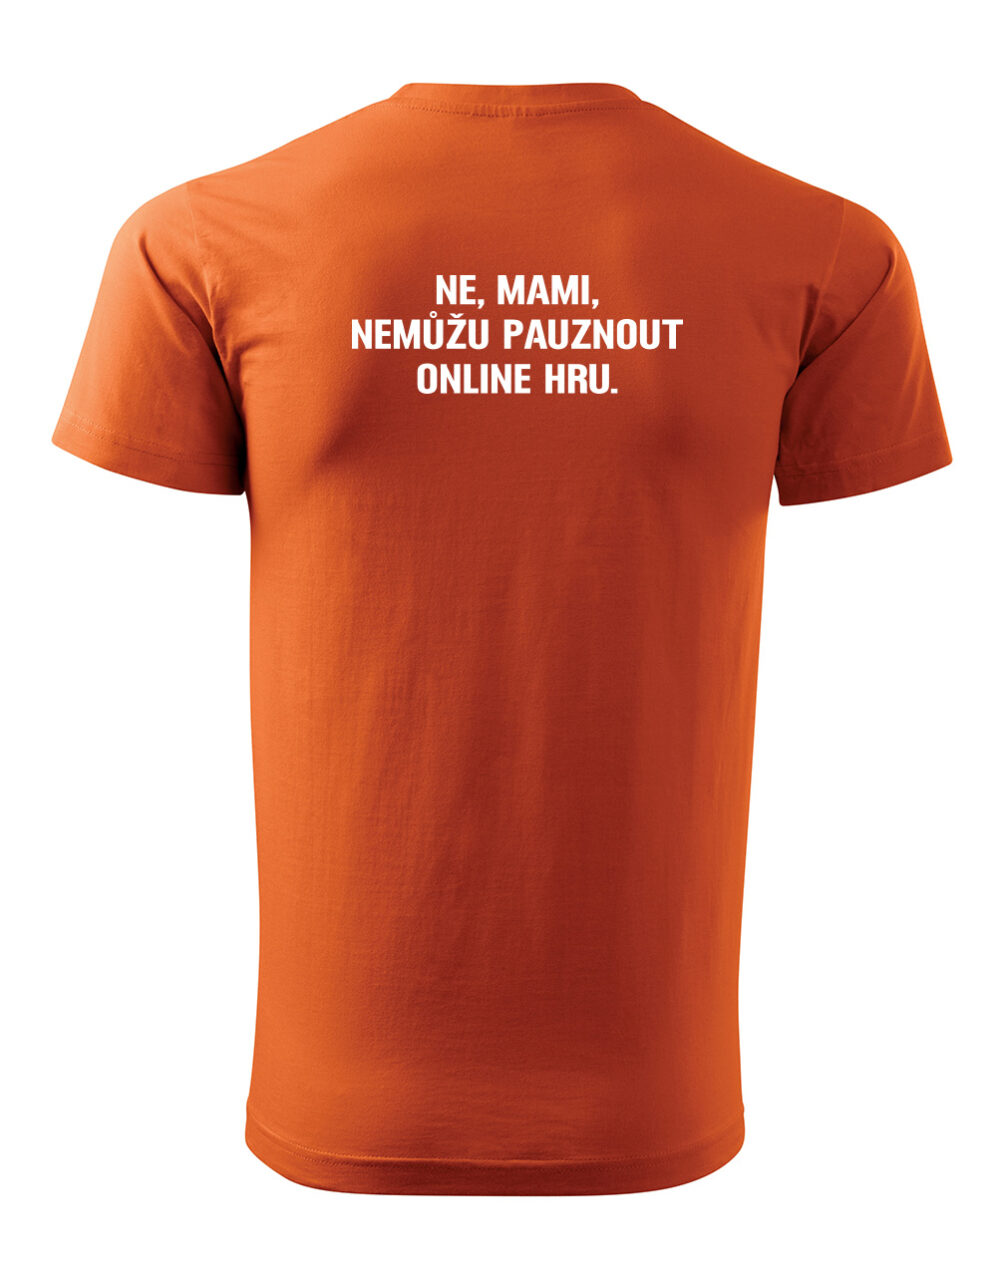 Pánské tričko s potiskem Nemůžu pauznout online hru oranžová